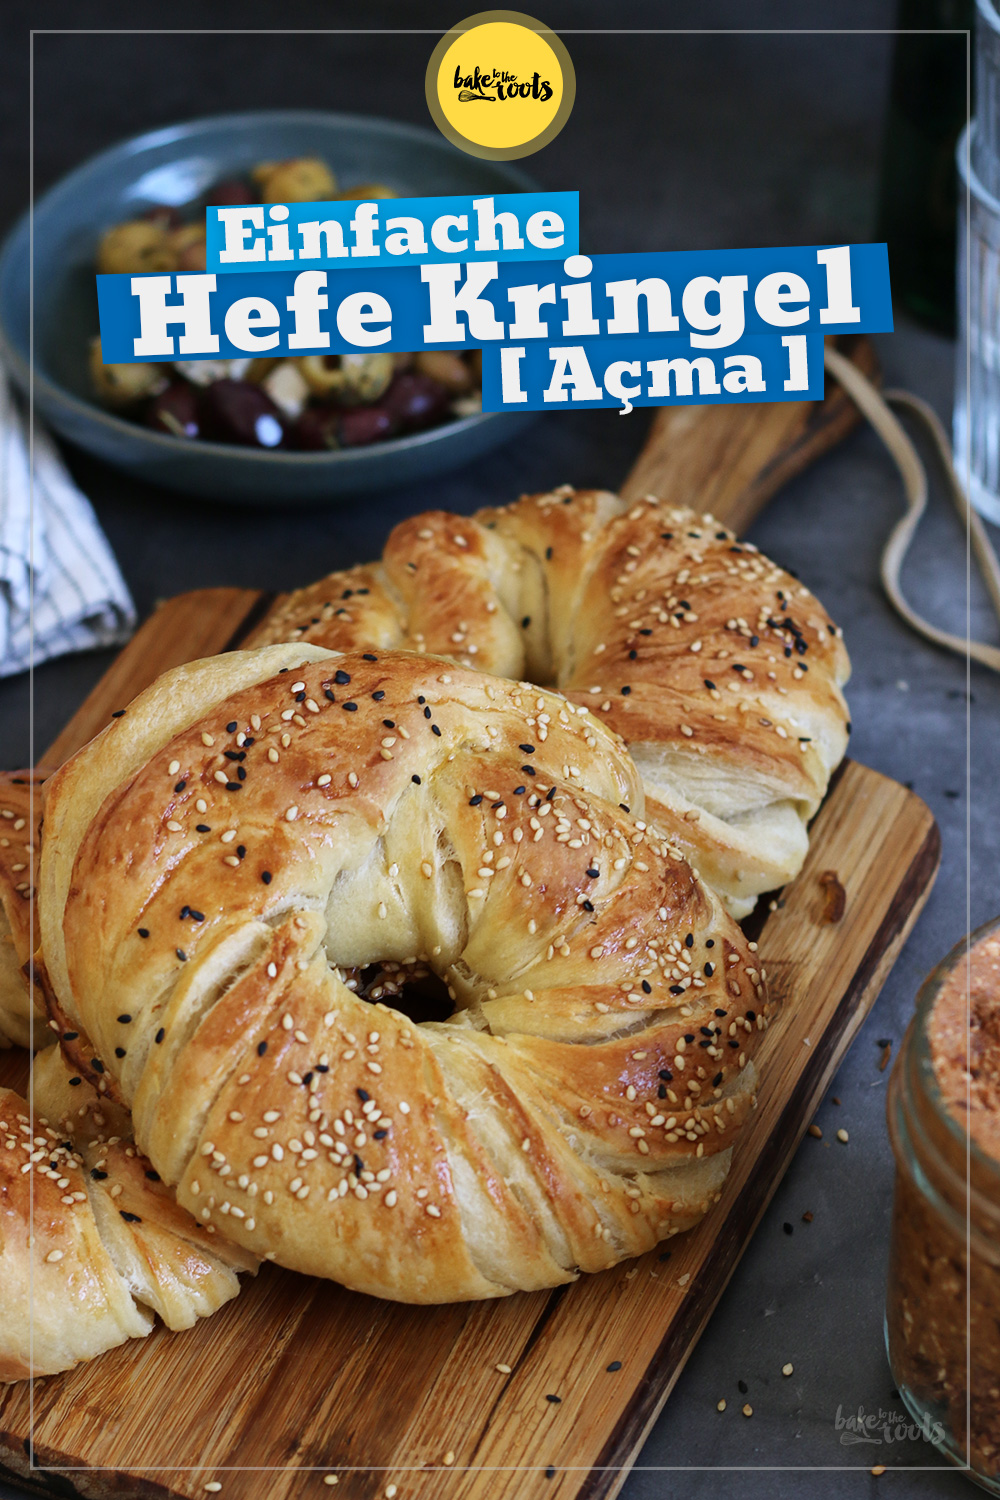 Türkische Hefekringel (Açma) | Bake to the roots